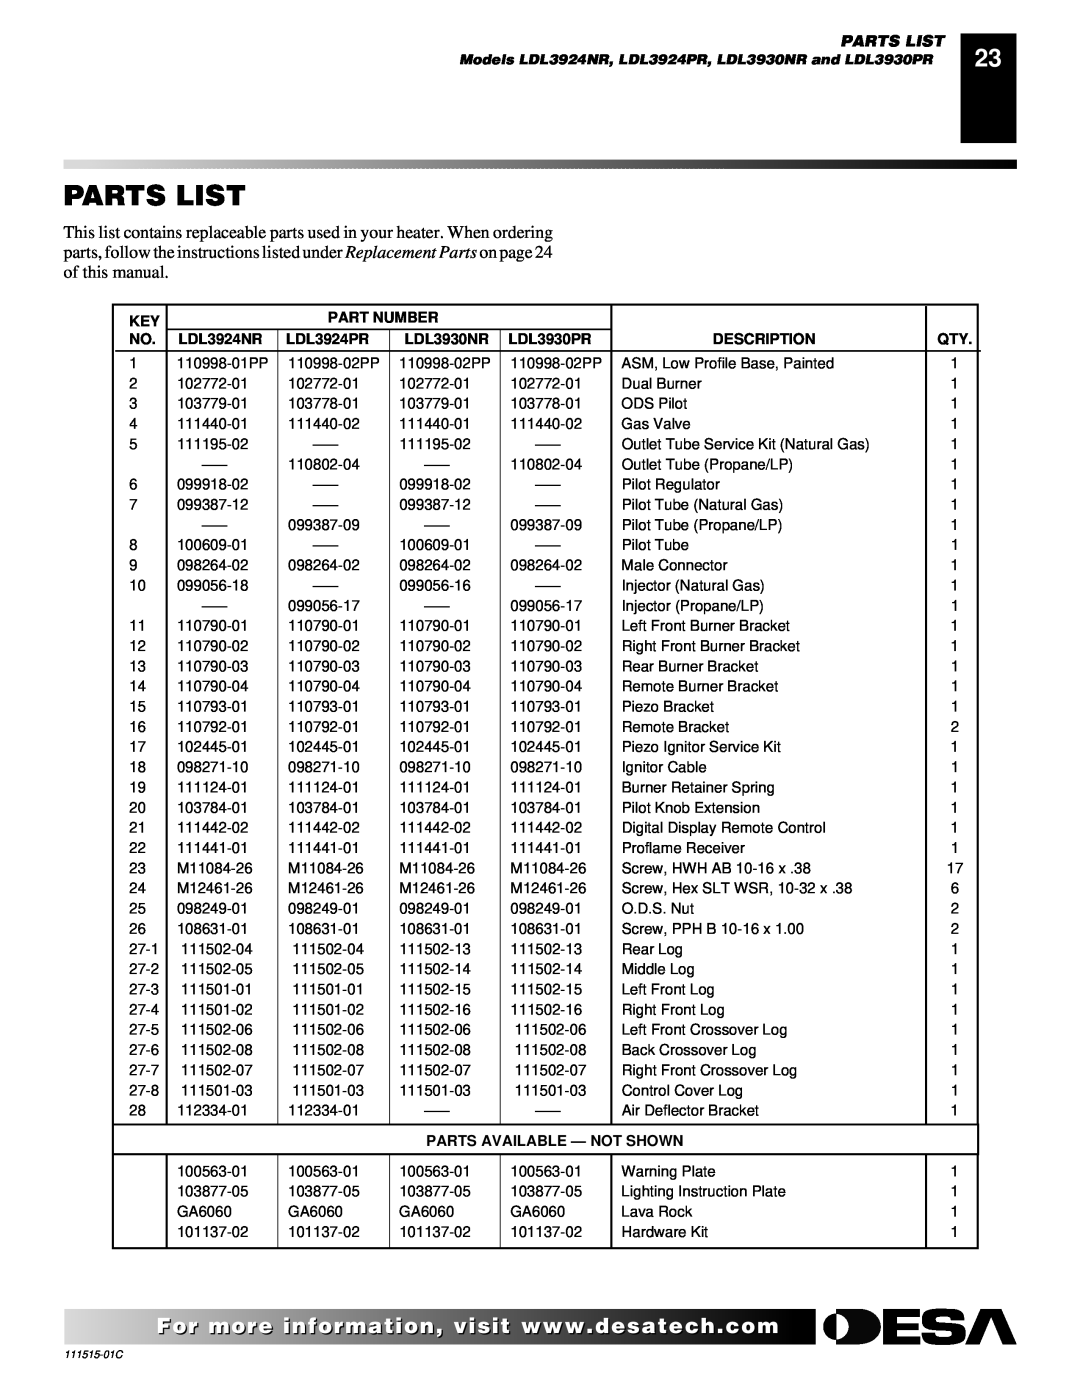 Desa LDL3924PR Parts List, Part Number, LDL3924NR, LDL3930NR, LDL3930PR, Description, Parts Available - Not Shown 